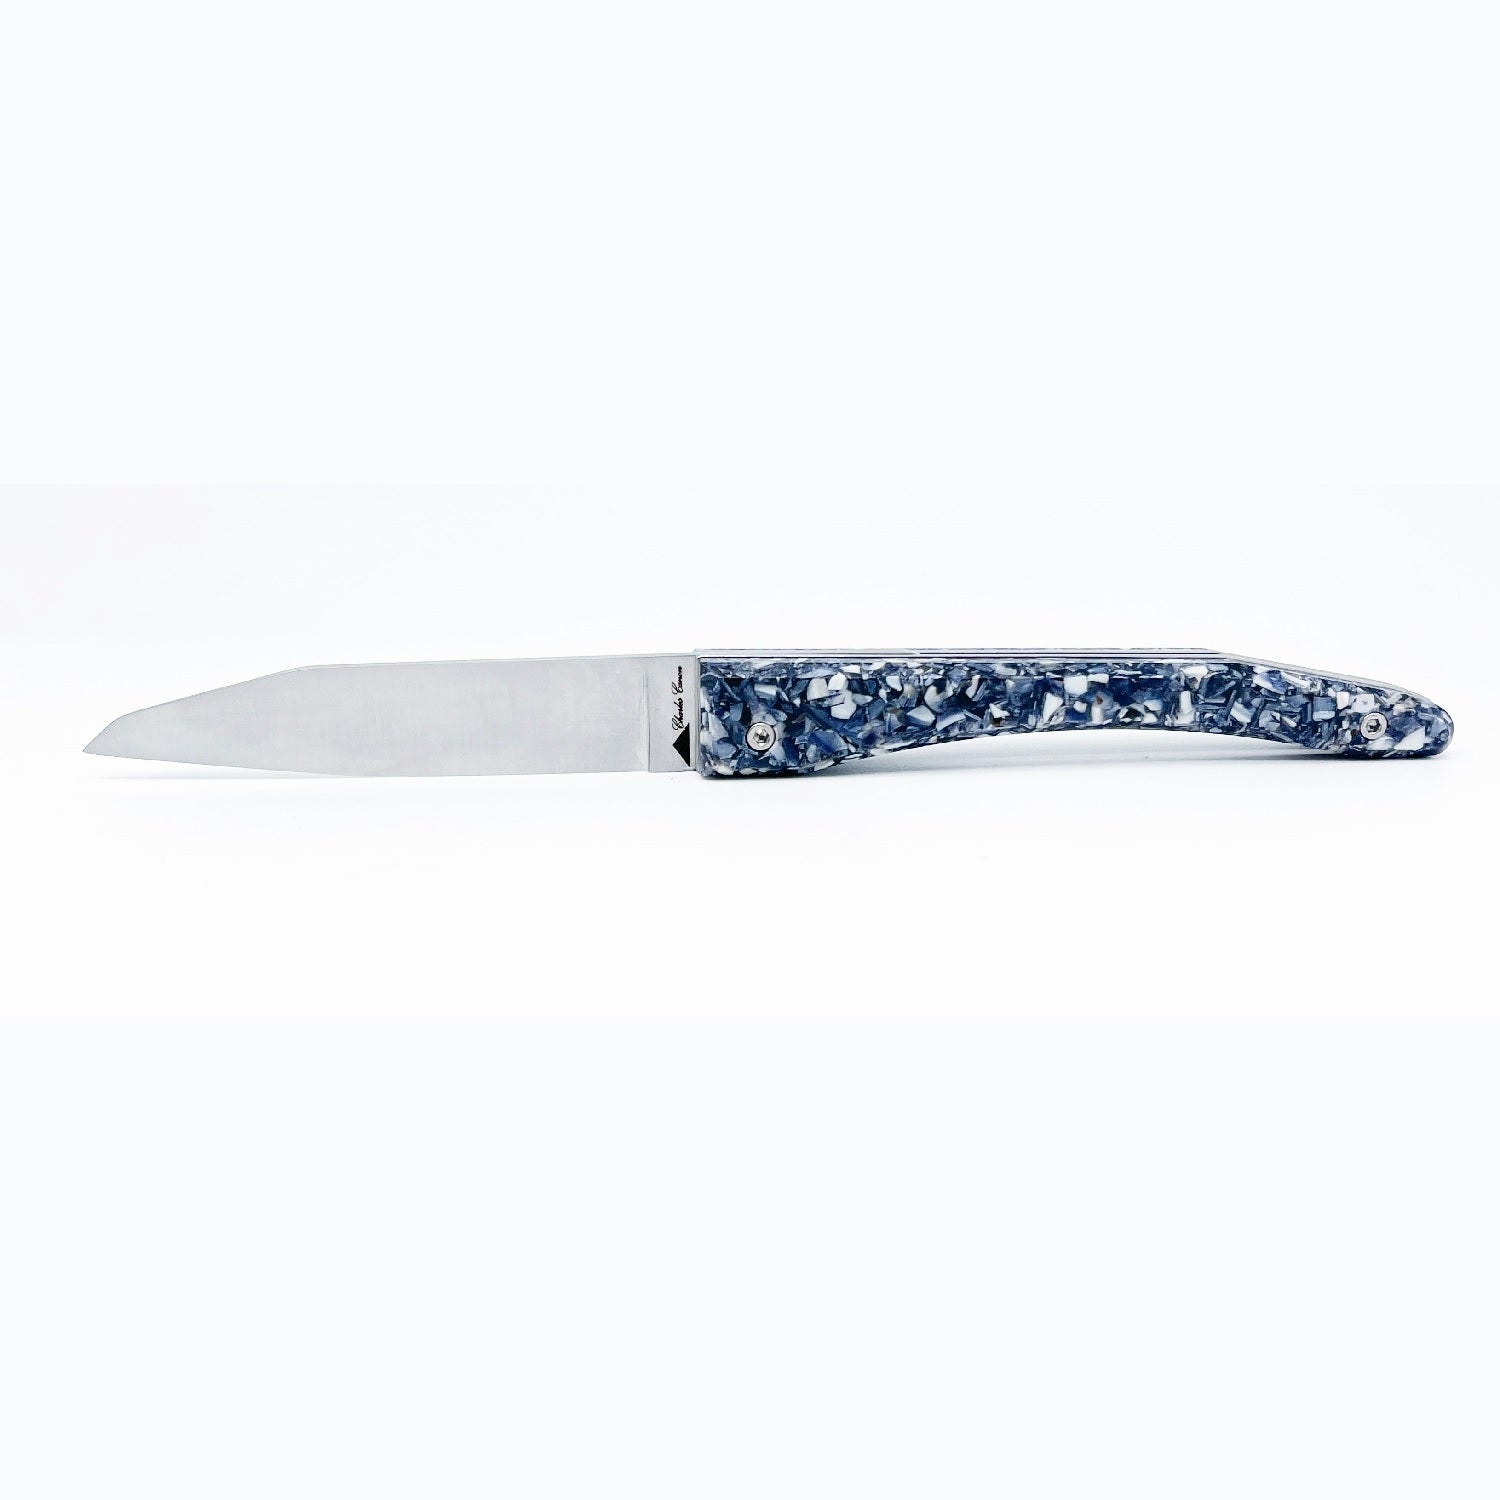 Piemontesisches Messer mit Muschelschalengriff